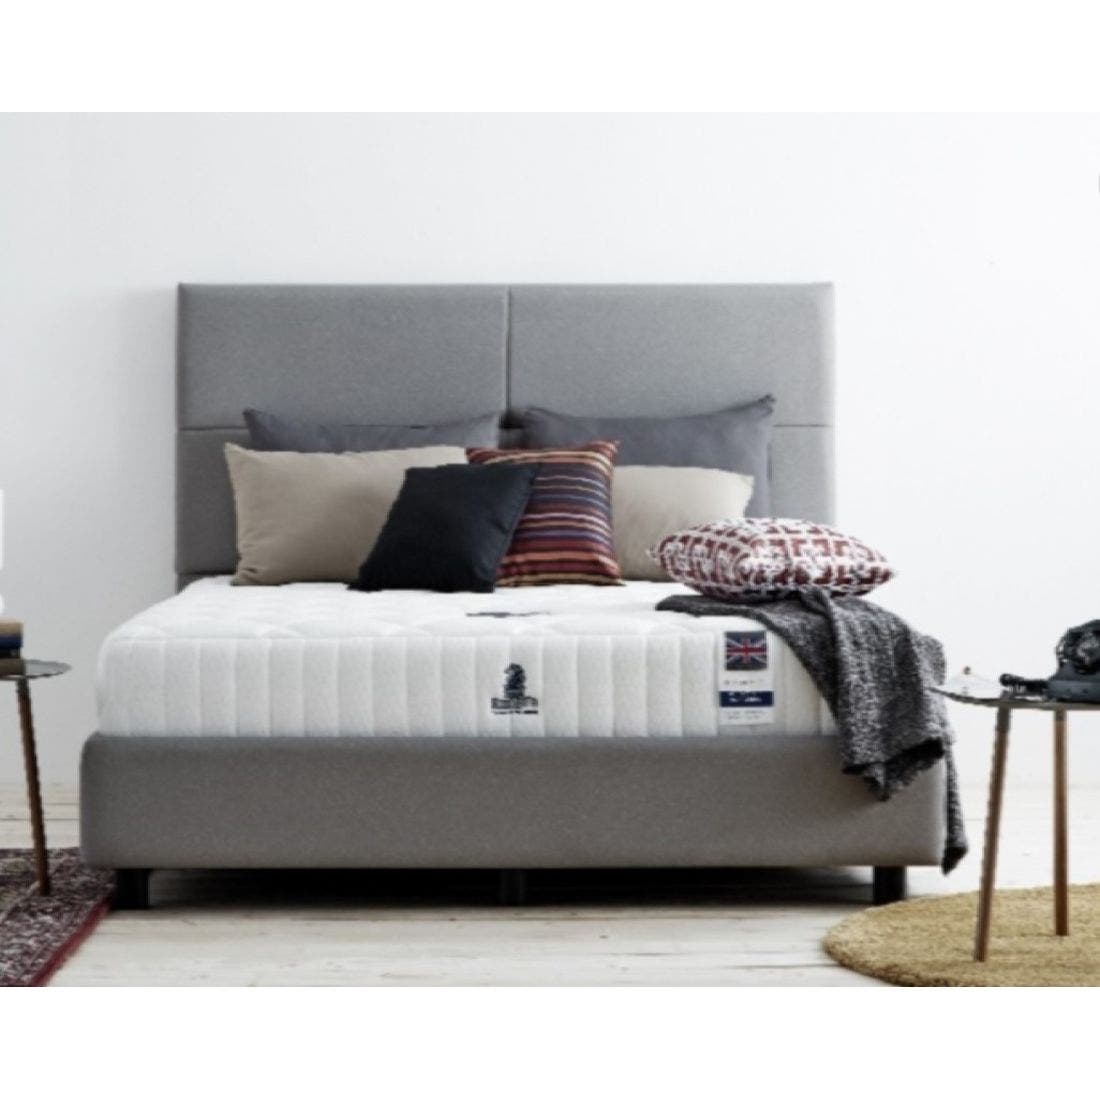 39002025-mattress-bedding-mattresses-foam-mattresses-31